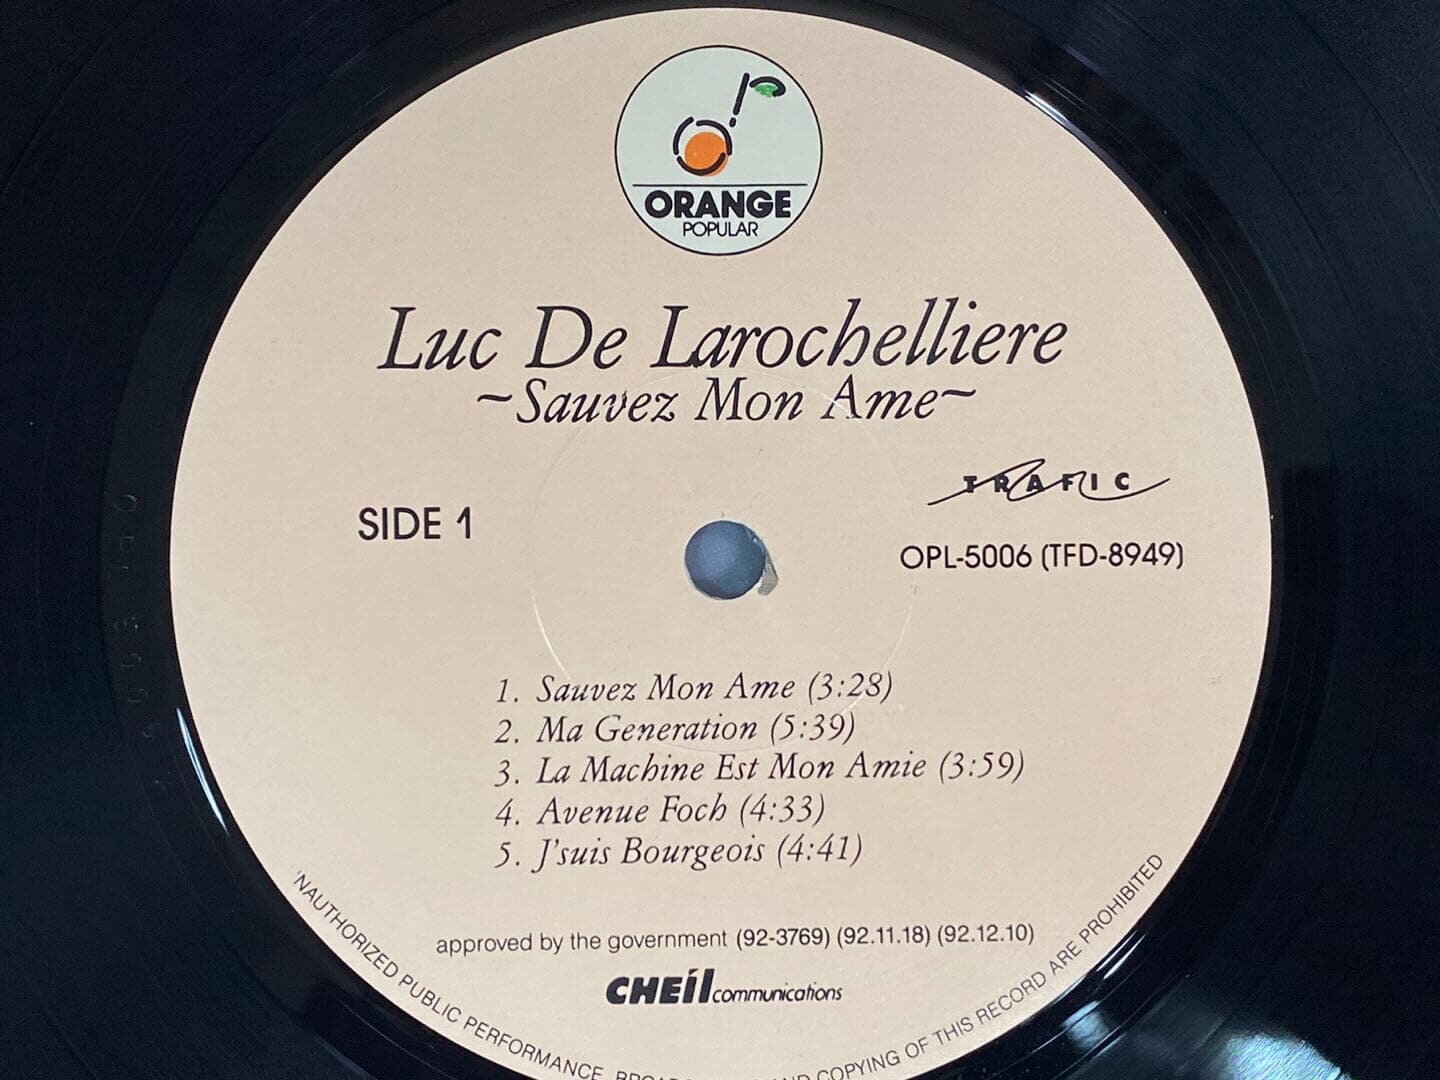 [LP] 럭 드 랄로쉘리에르 - Luc De Larochelliere - Sauvez Mon Ame LP [오렌지-라이센스반]